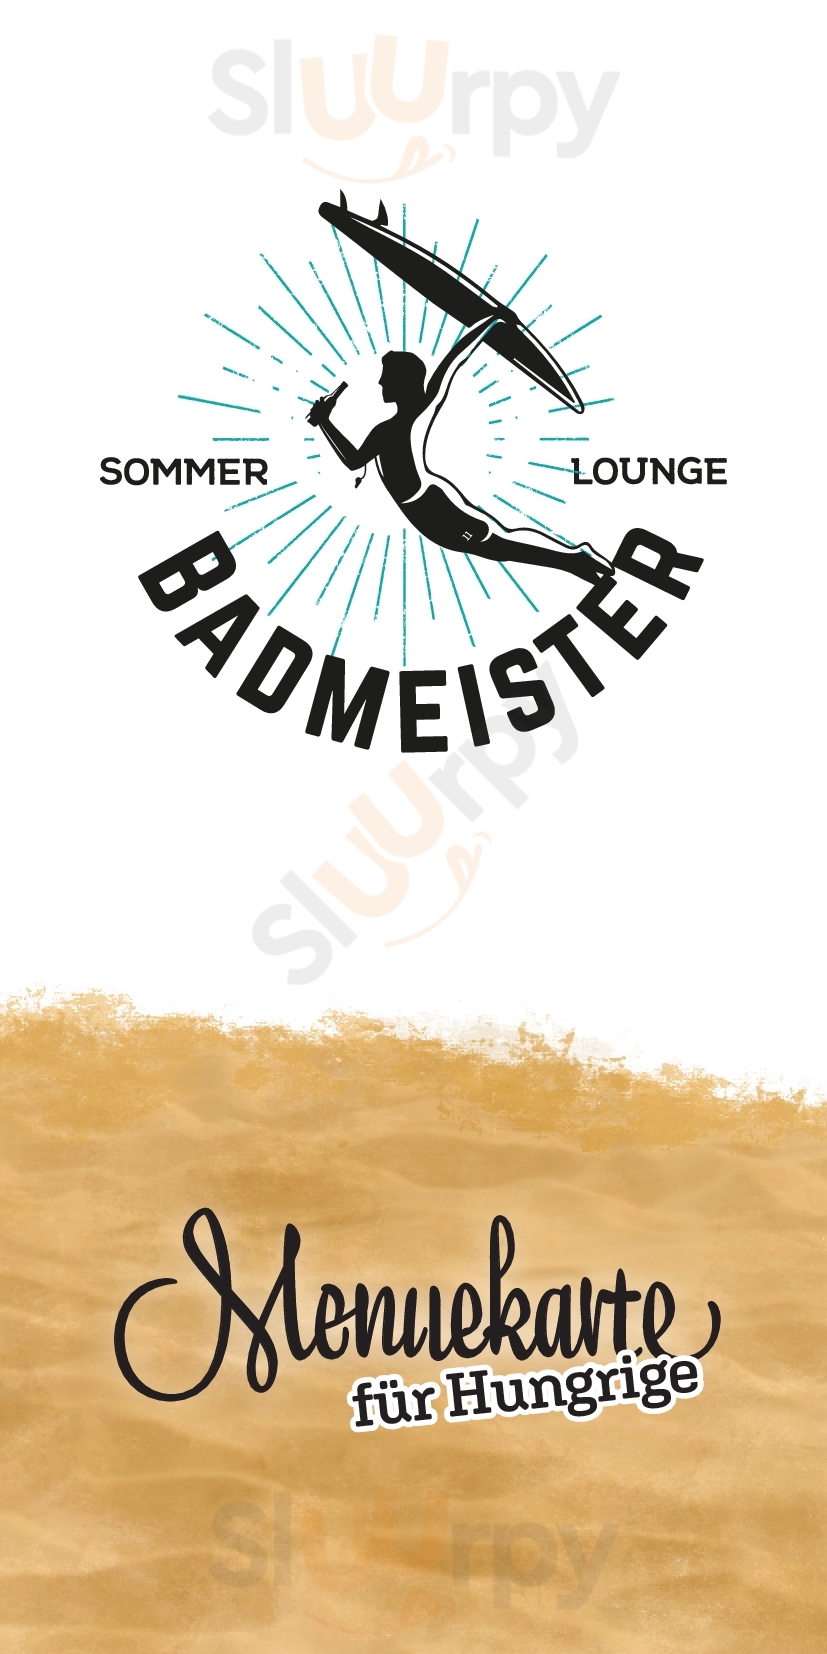 Badmeister Sommer Lounge Solothurn Menu - 1